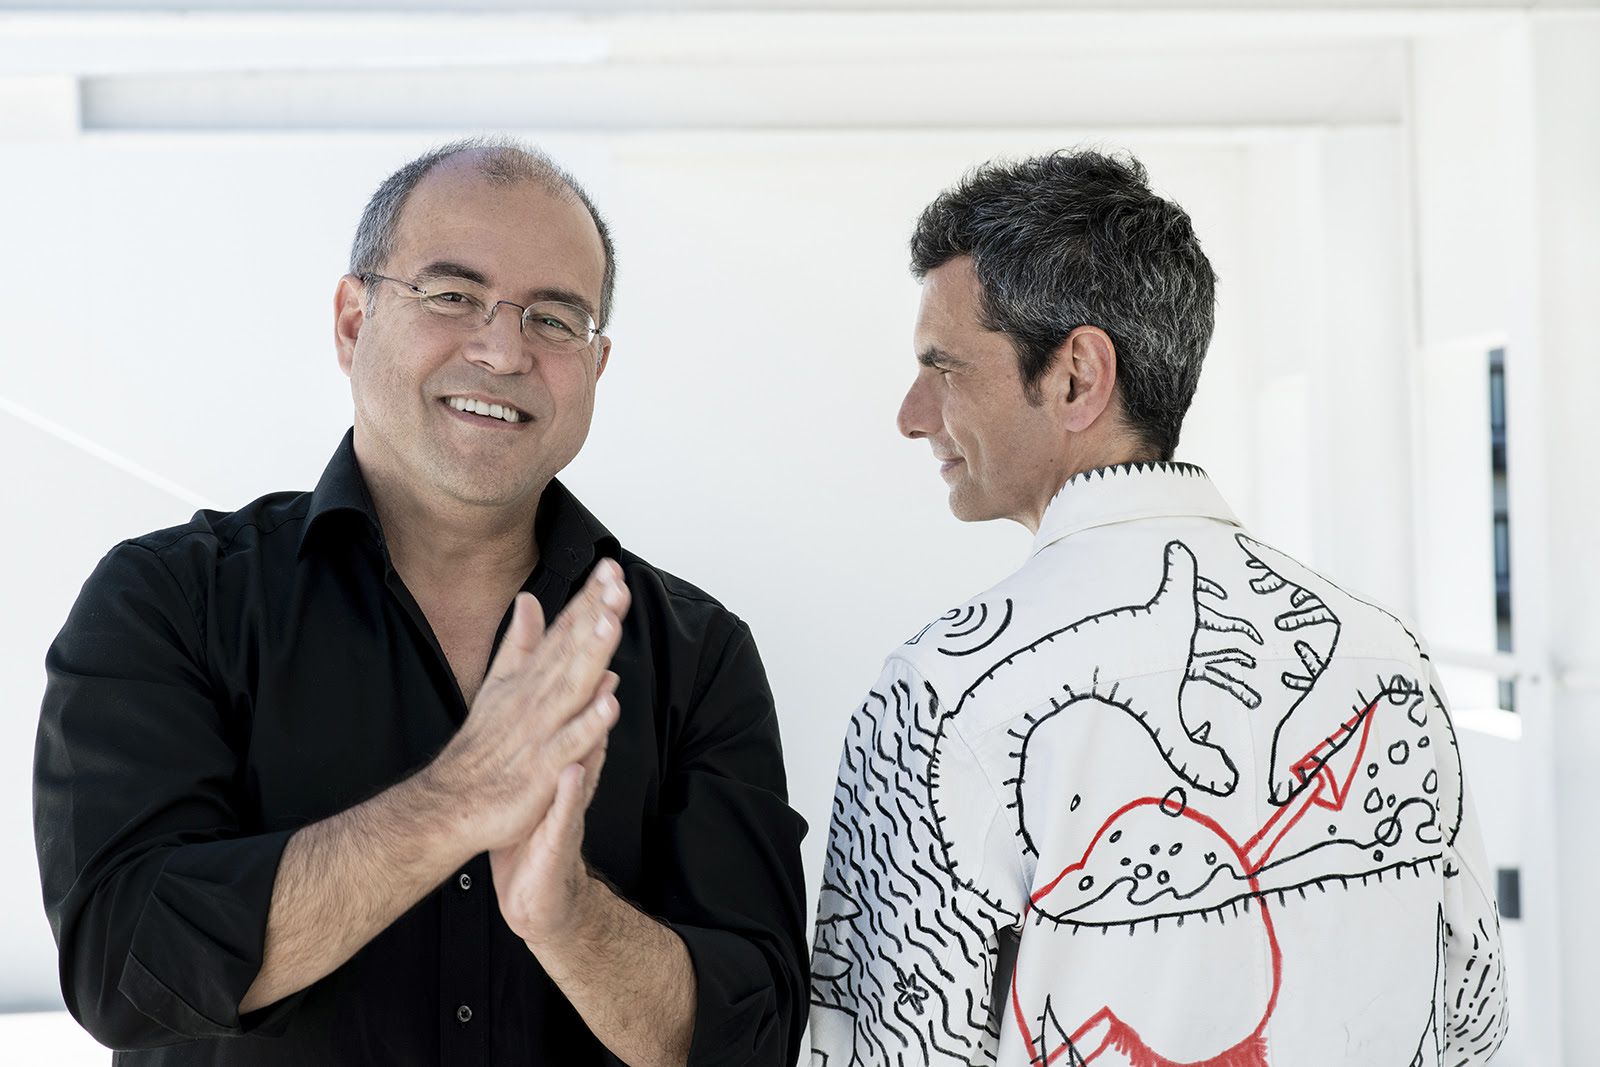 Nuno Artur Silva e António Jorge Gonçalves apresentam “Onde é que eu ia?”, espectáculo de (quase) stand comedy